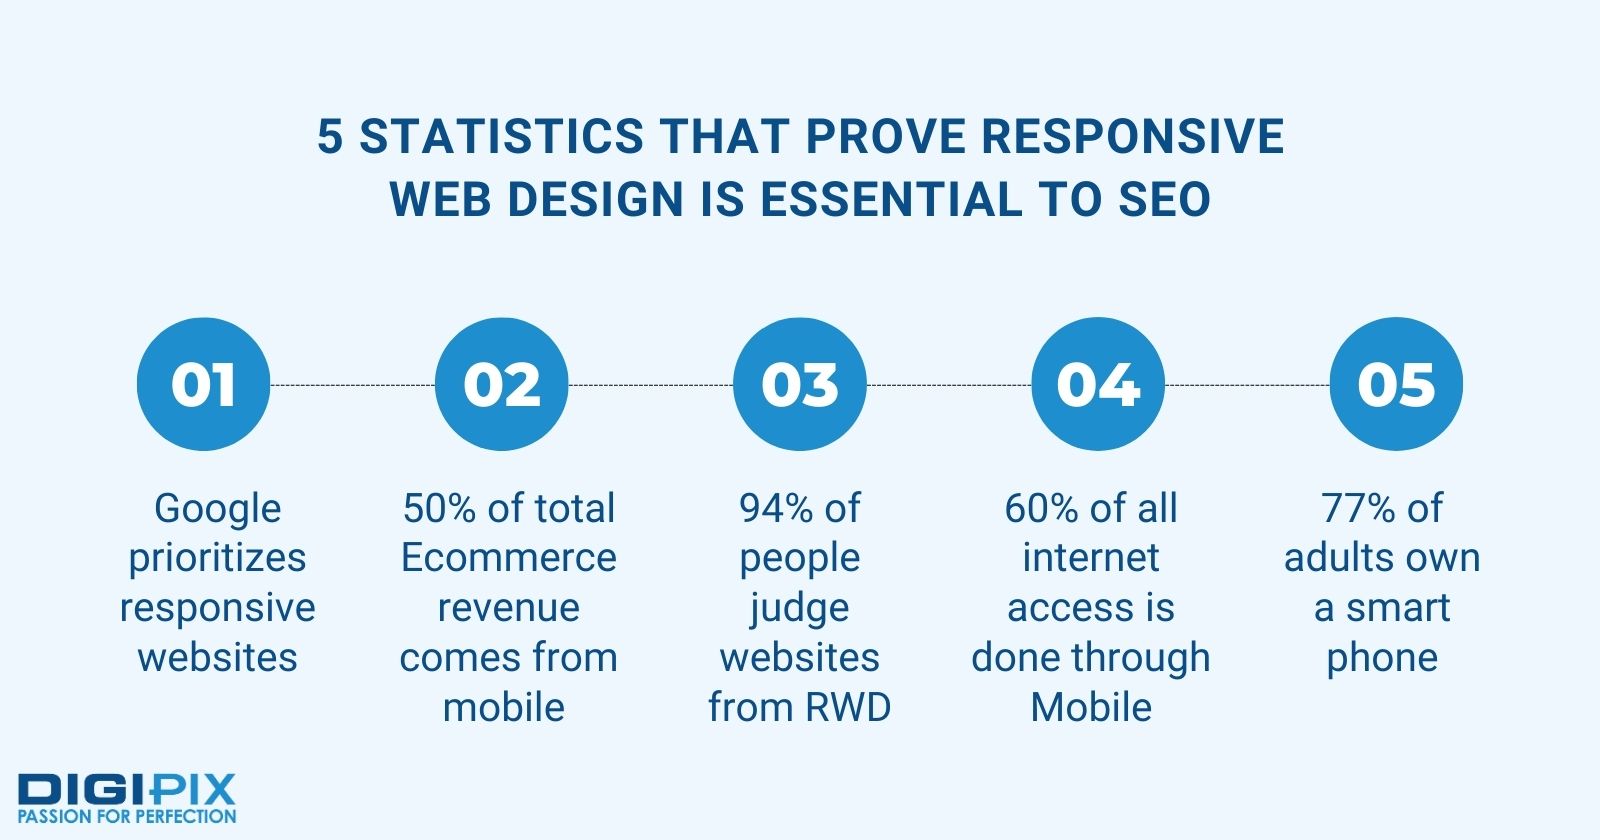 5 statistics to show essential web design for SEO